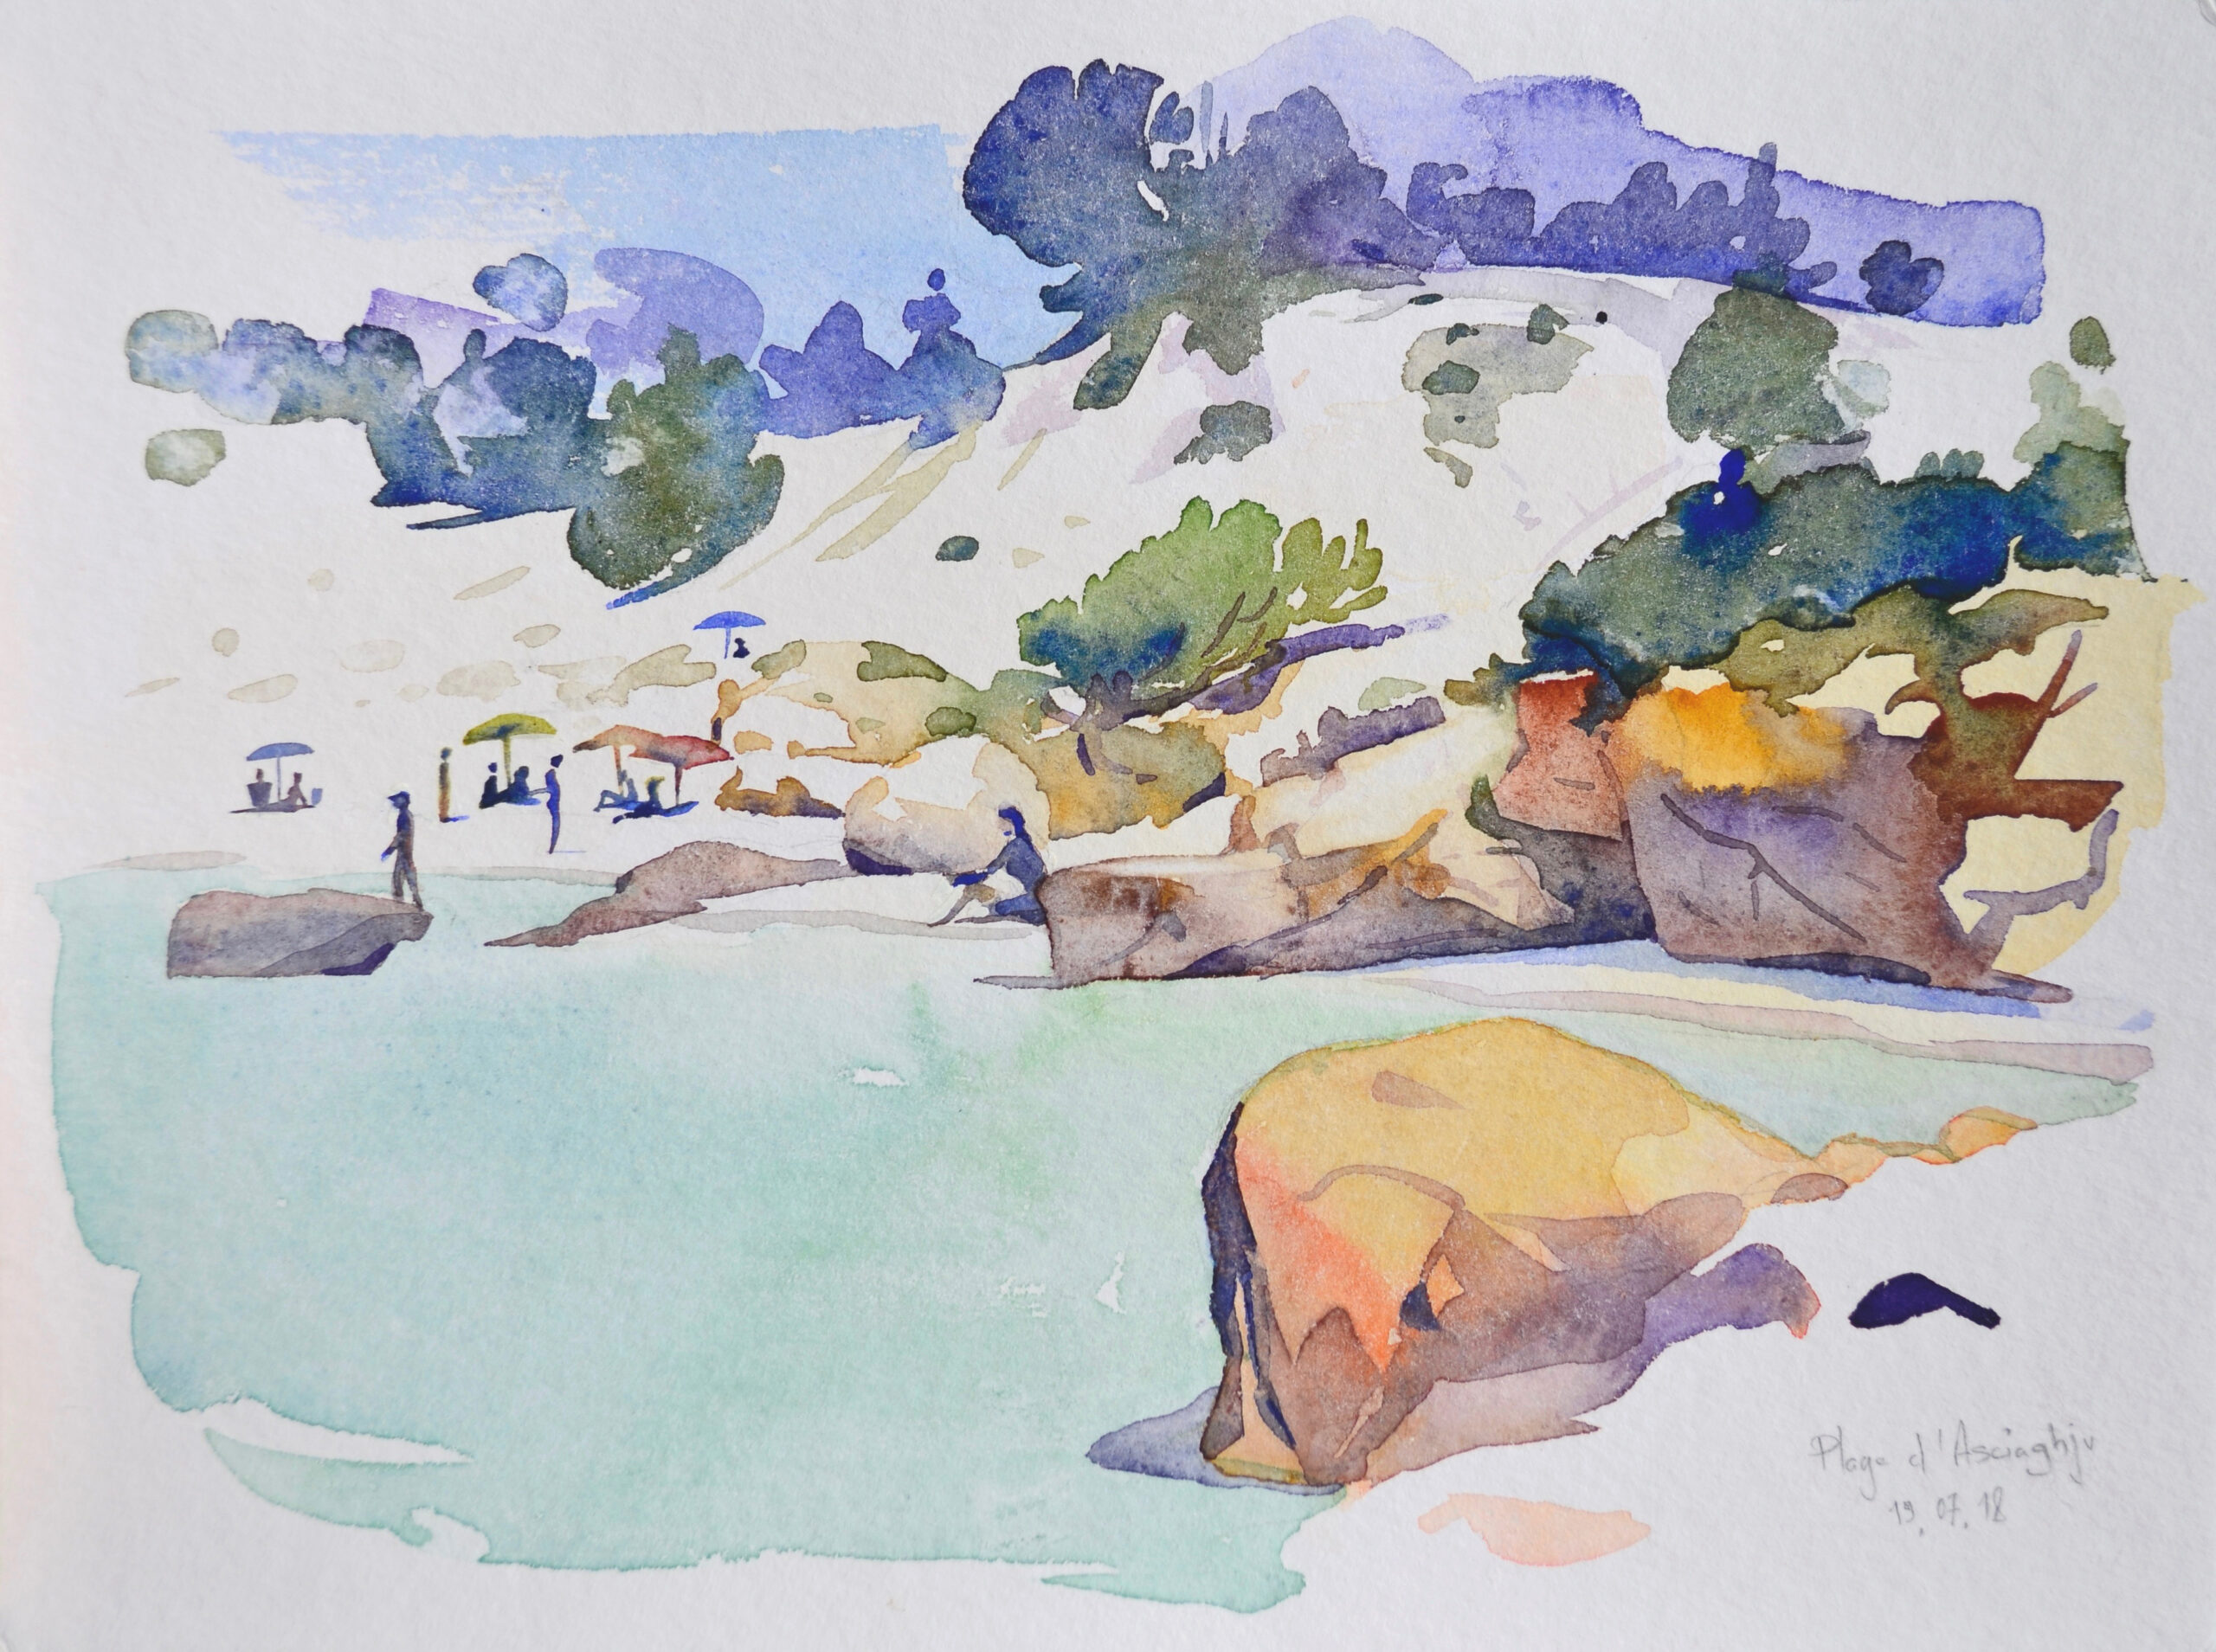 Aquarelle sur le motif  - watercolor -Patrick Clouet - artwork- landscape painting-corse-ile de Beauté- Pallombaggia_ plage d'Asciaghju